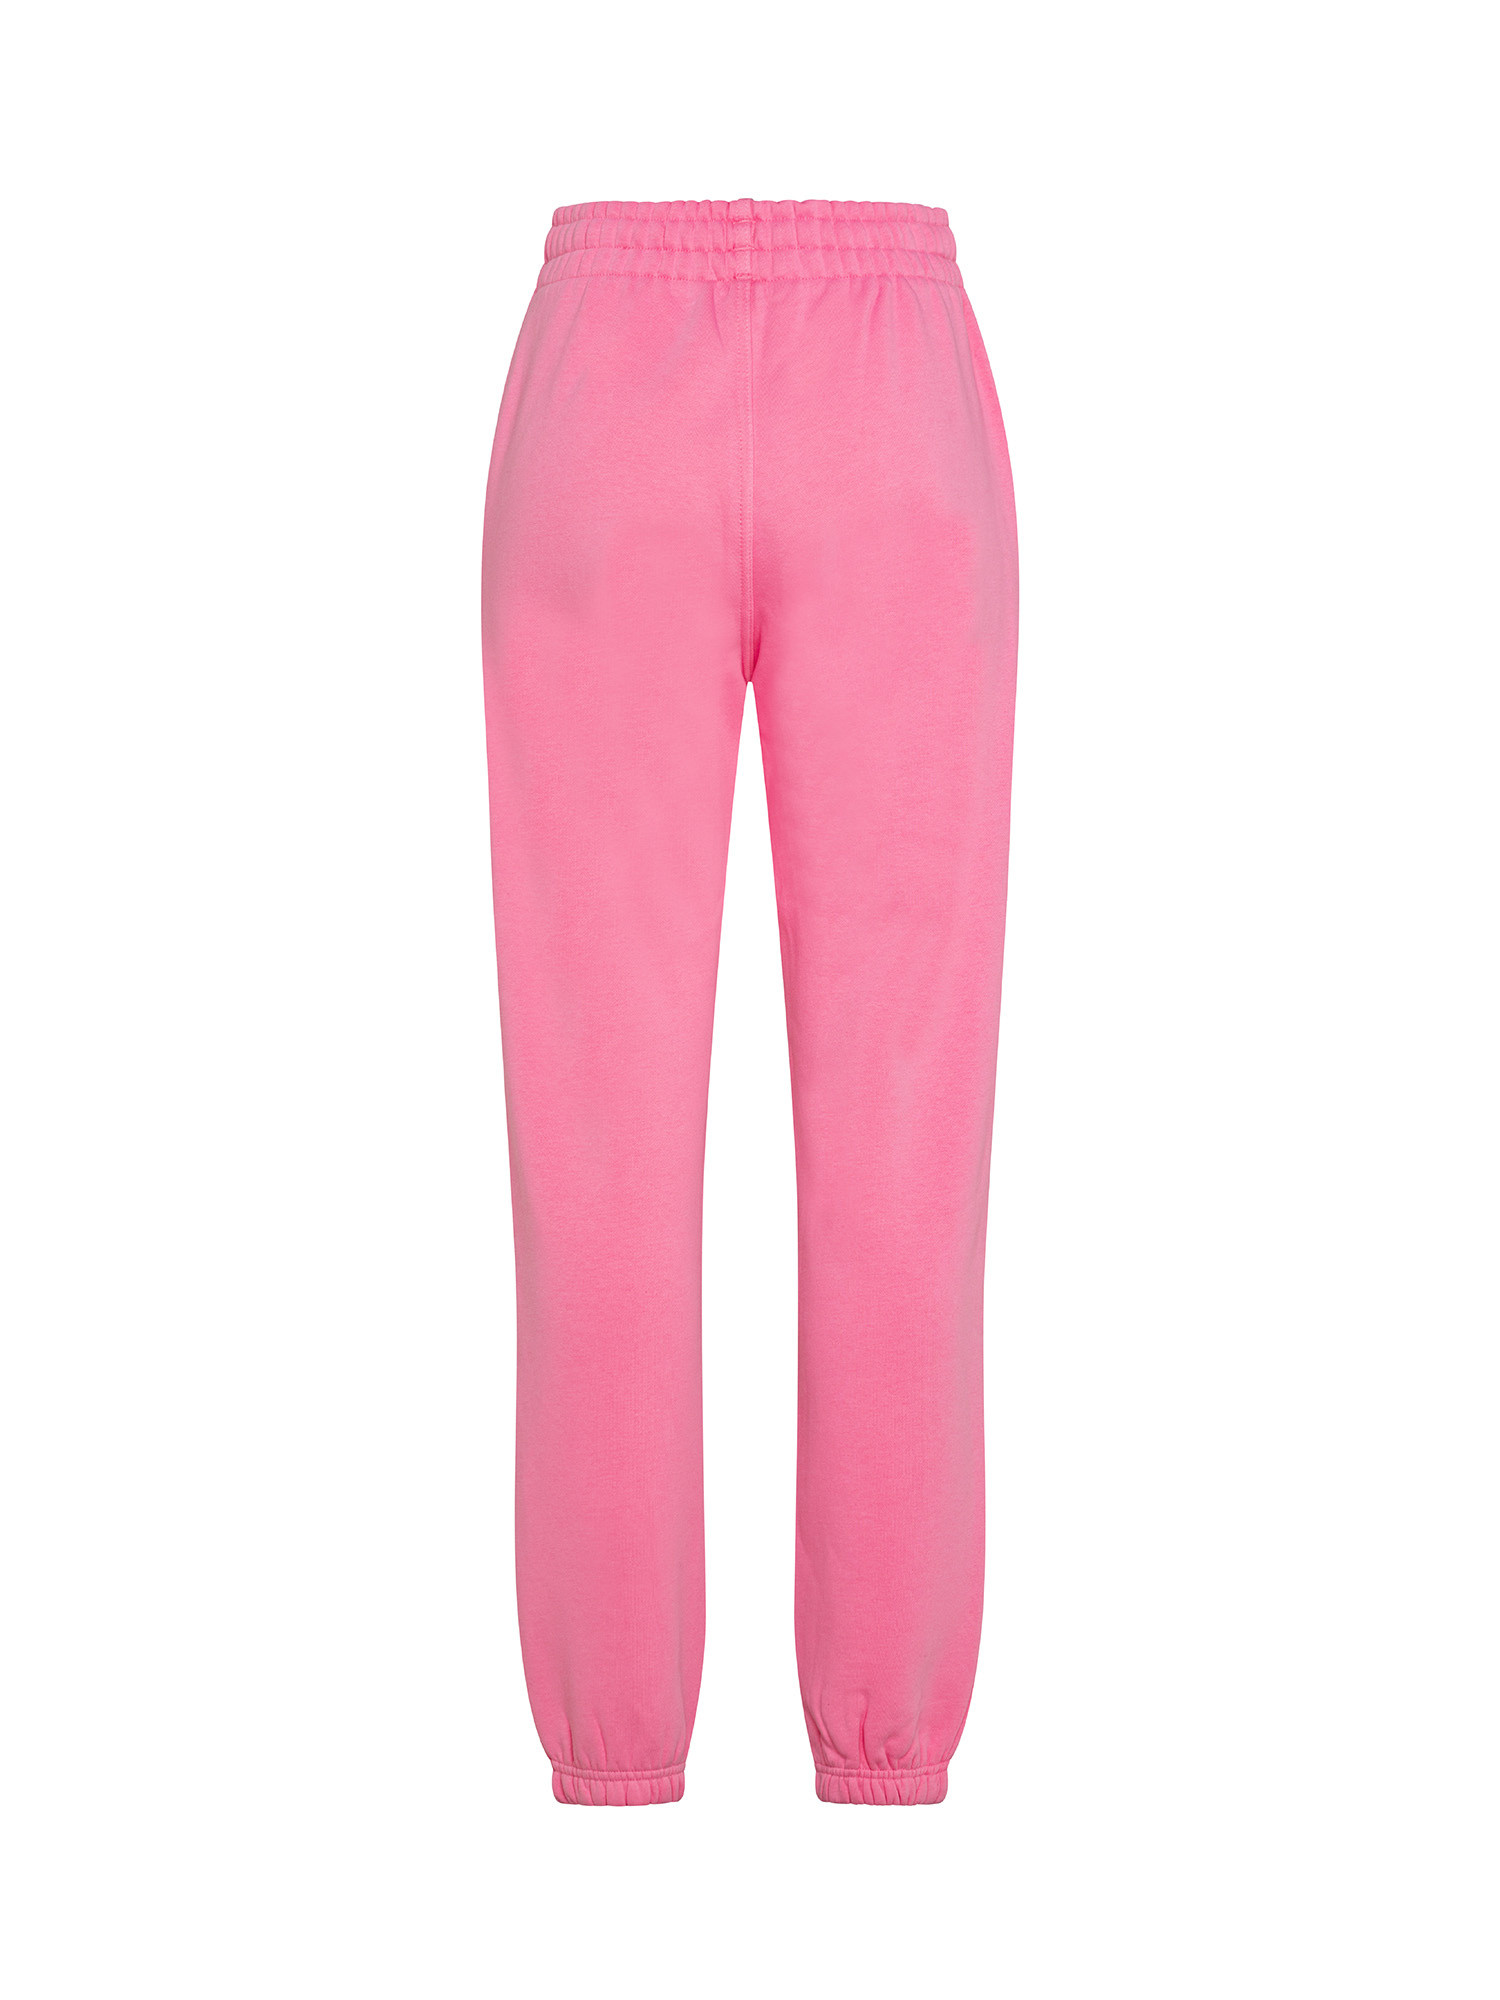 Adidas - Pantaloni adicolor essentials fleece joggers, Rosa, large image number 1